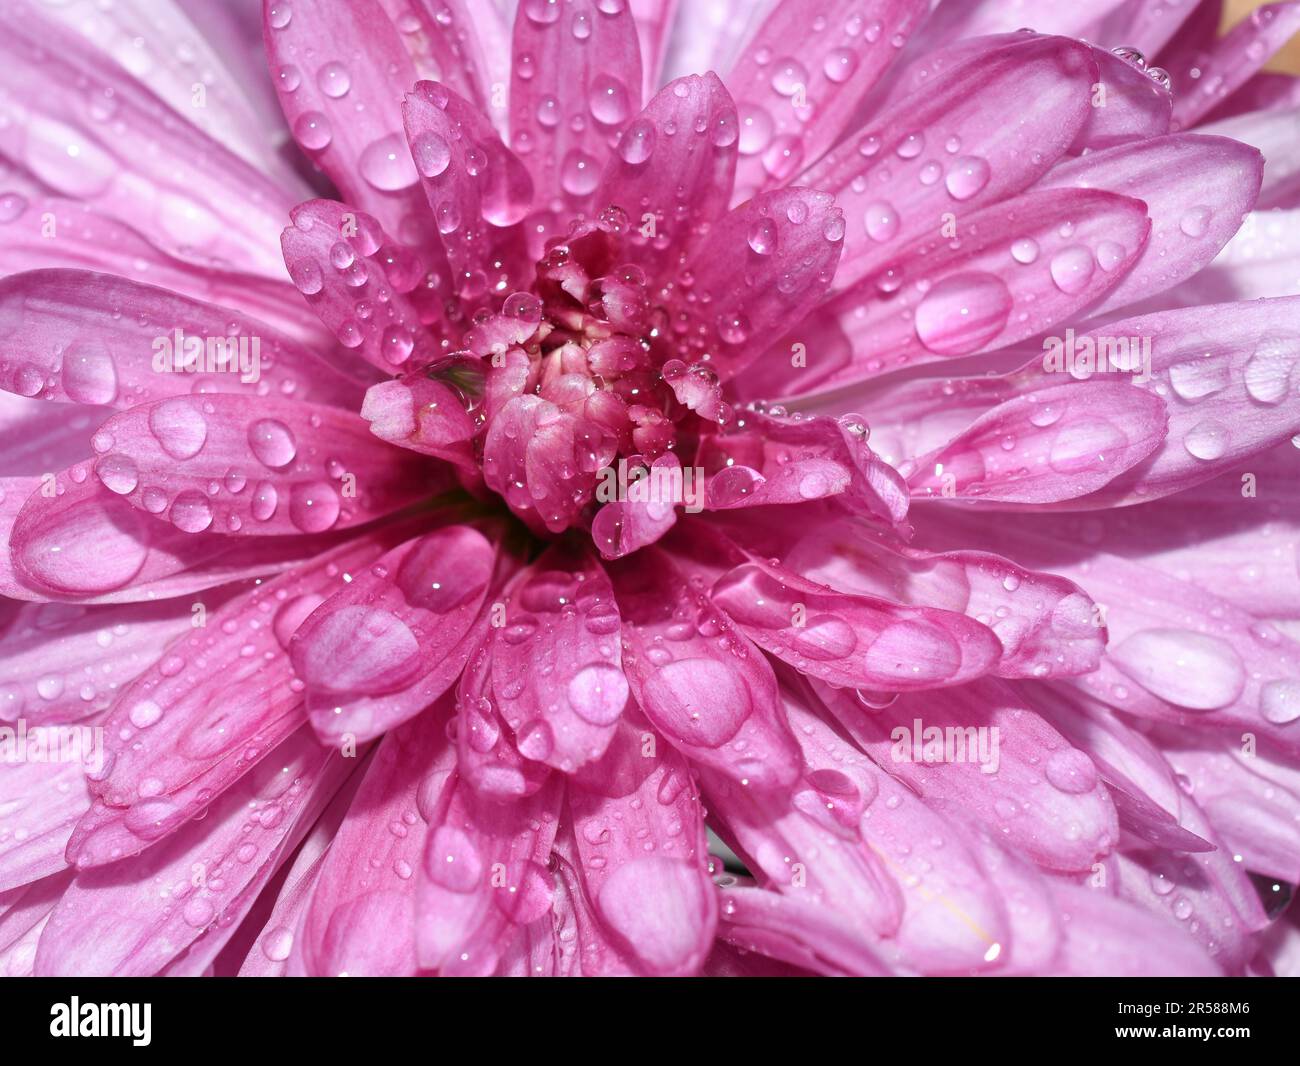 Gros plan extrême sur la fleur de chrysanthème rose mouillée par la pluie Banque D'Images